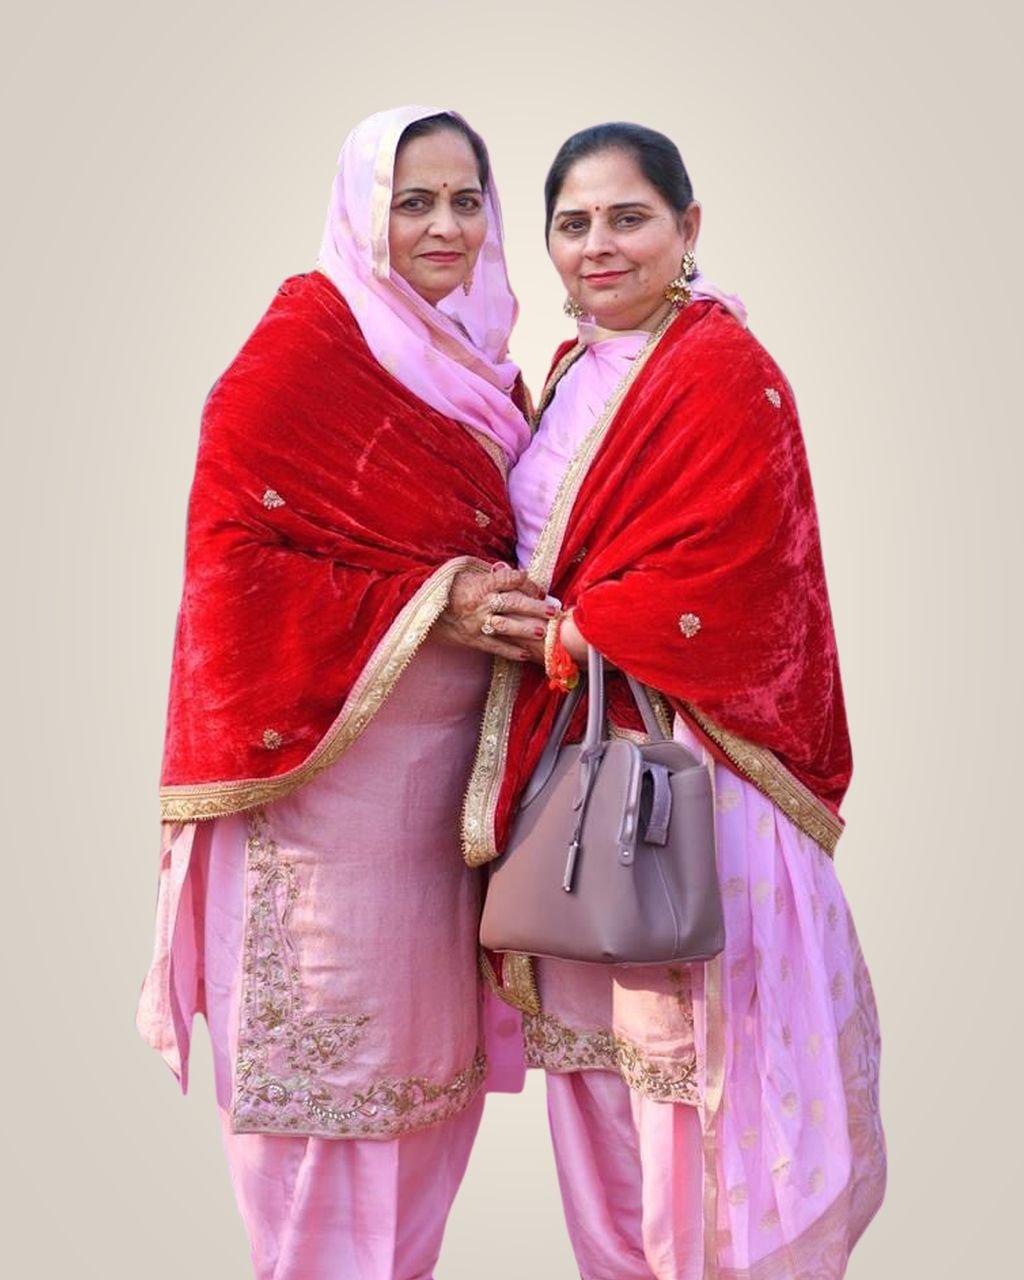 Woman Traditional Punjabi Dress Stock Photo 113672860 | Shutterstock